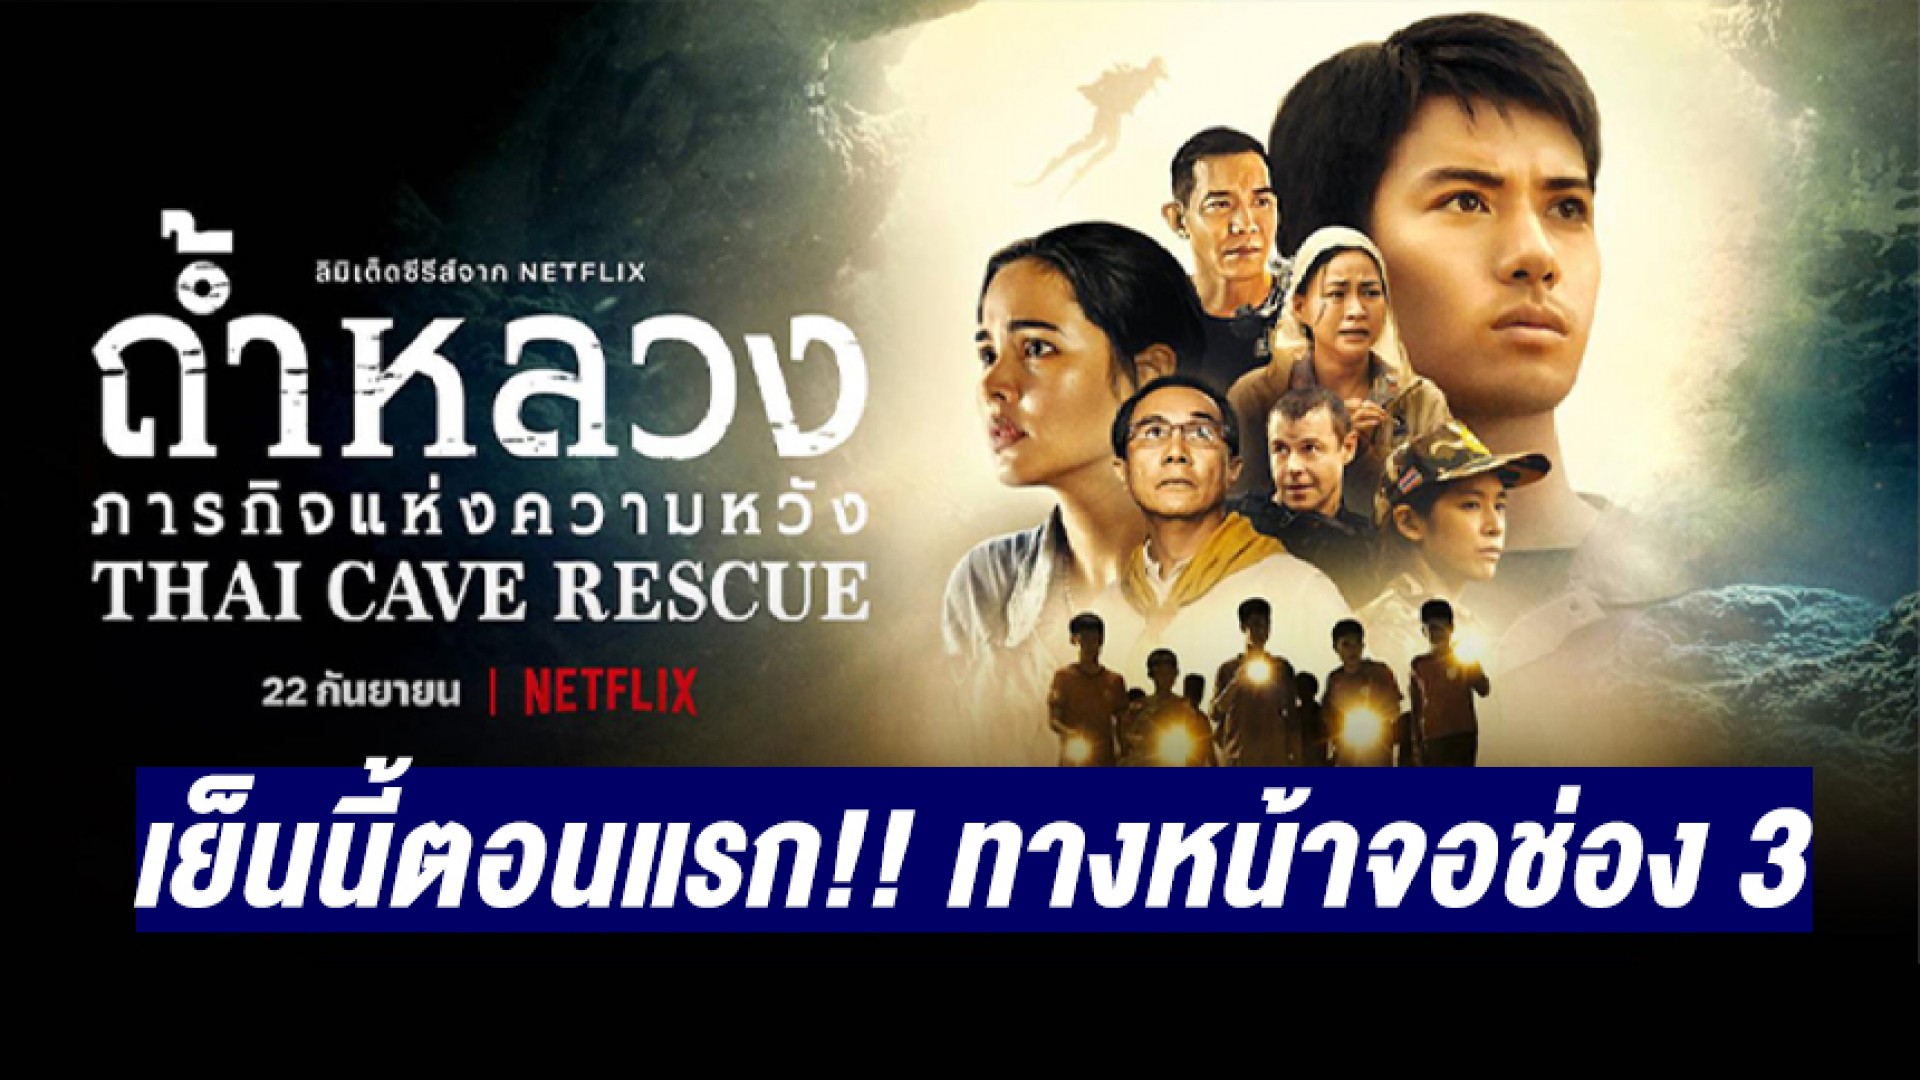 เย็นนี้อย่าพลาดชม! “ถ้ำหลวง: ภารกิจแห่งความหวัง” (Thai Cave Rescue) ทางหน้าจอช่อง 3